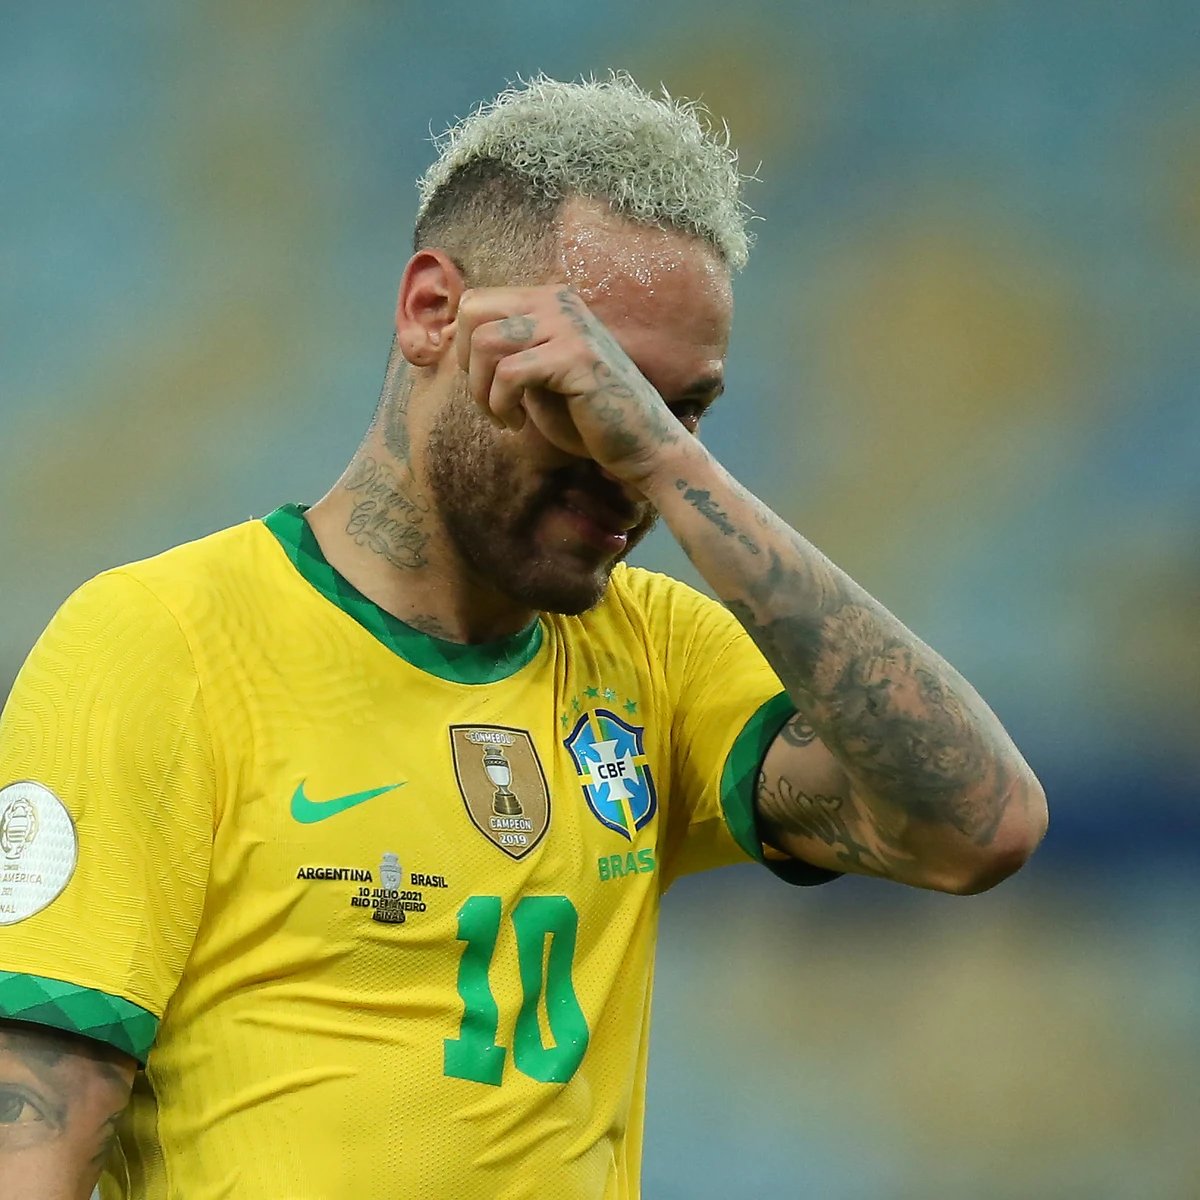 Neymar confesó que nunca quiso la camiseta 10 de Brasil y que le